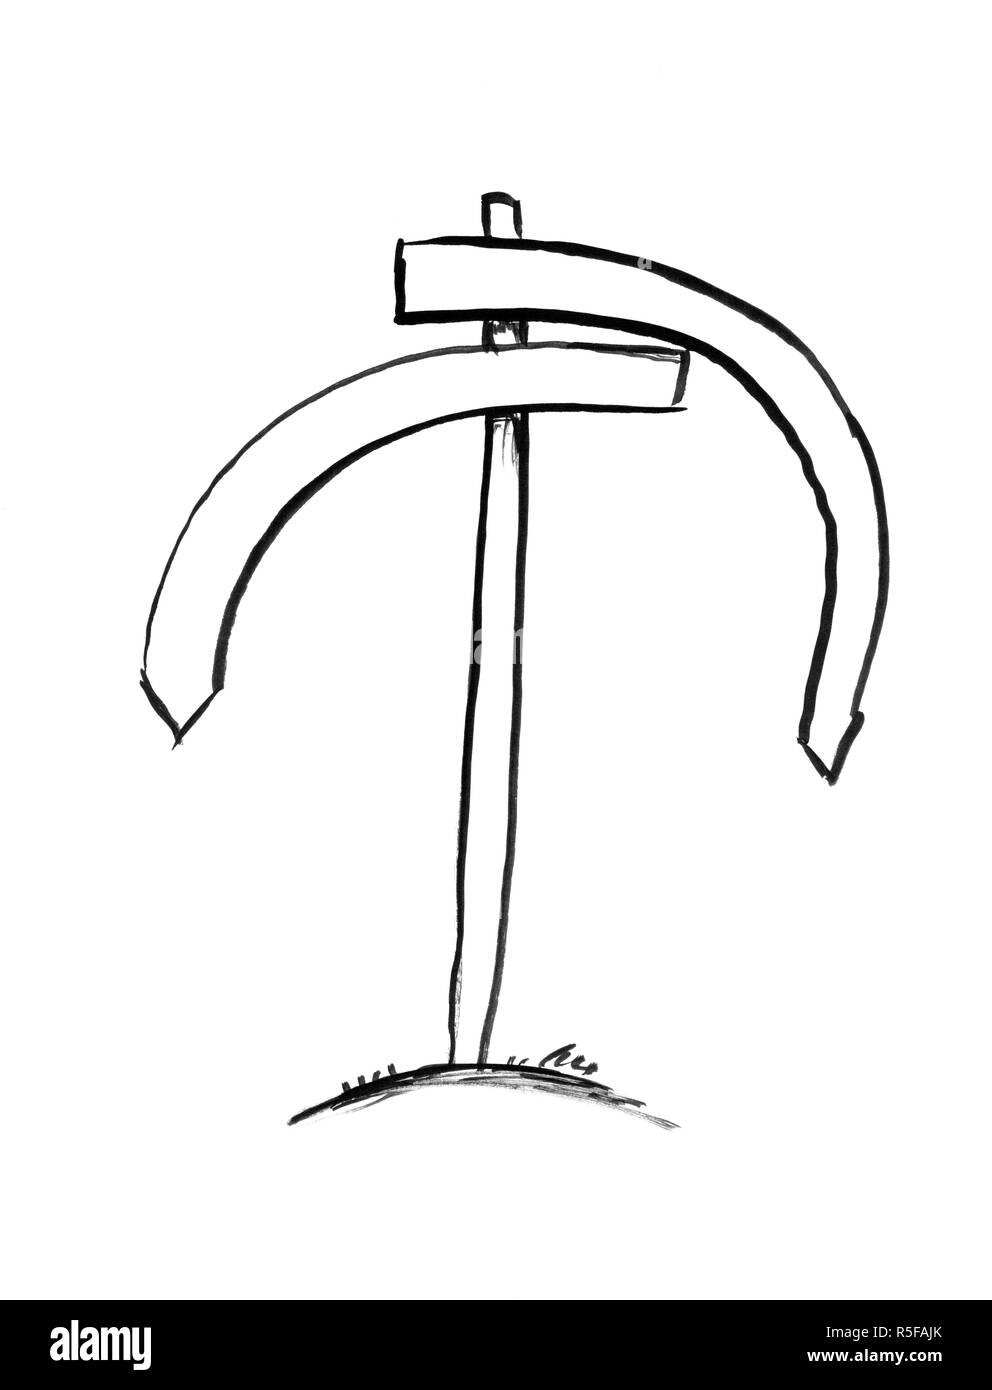 Inchiostro nero Grunge disegno a mano del cartello stradale con entrambe le frecce rivolte verso il basso Foto Stock